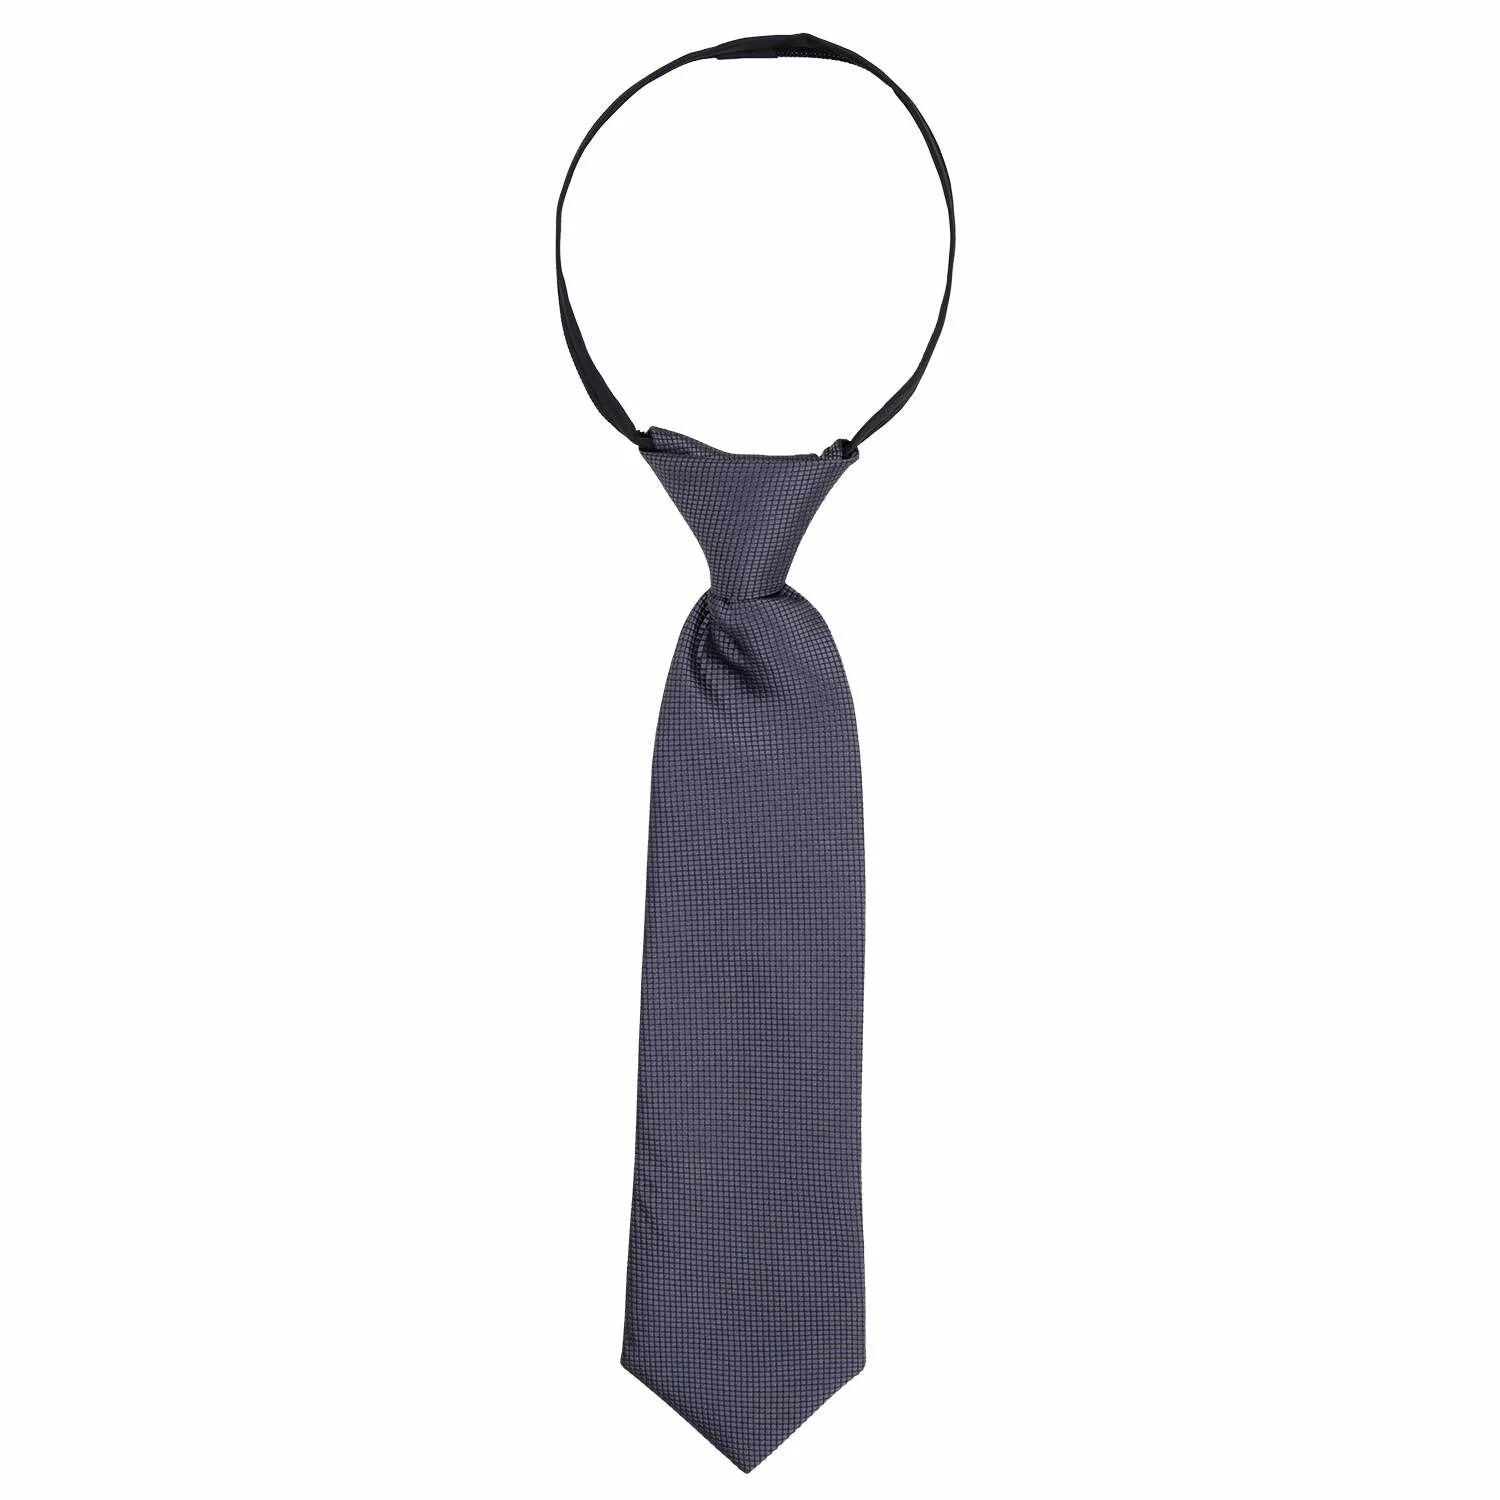 Детский галстук регат 843529. Черный галстук. Большой галстук. Галстук МЧС мужской. Галстук для мальчика купить